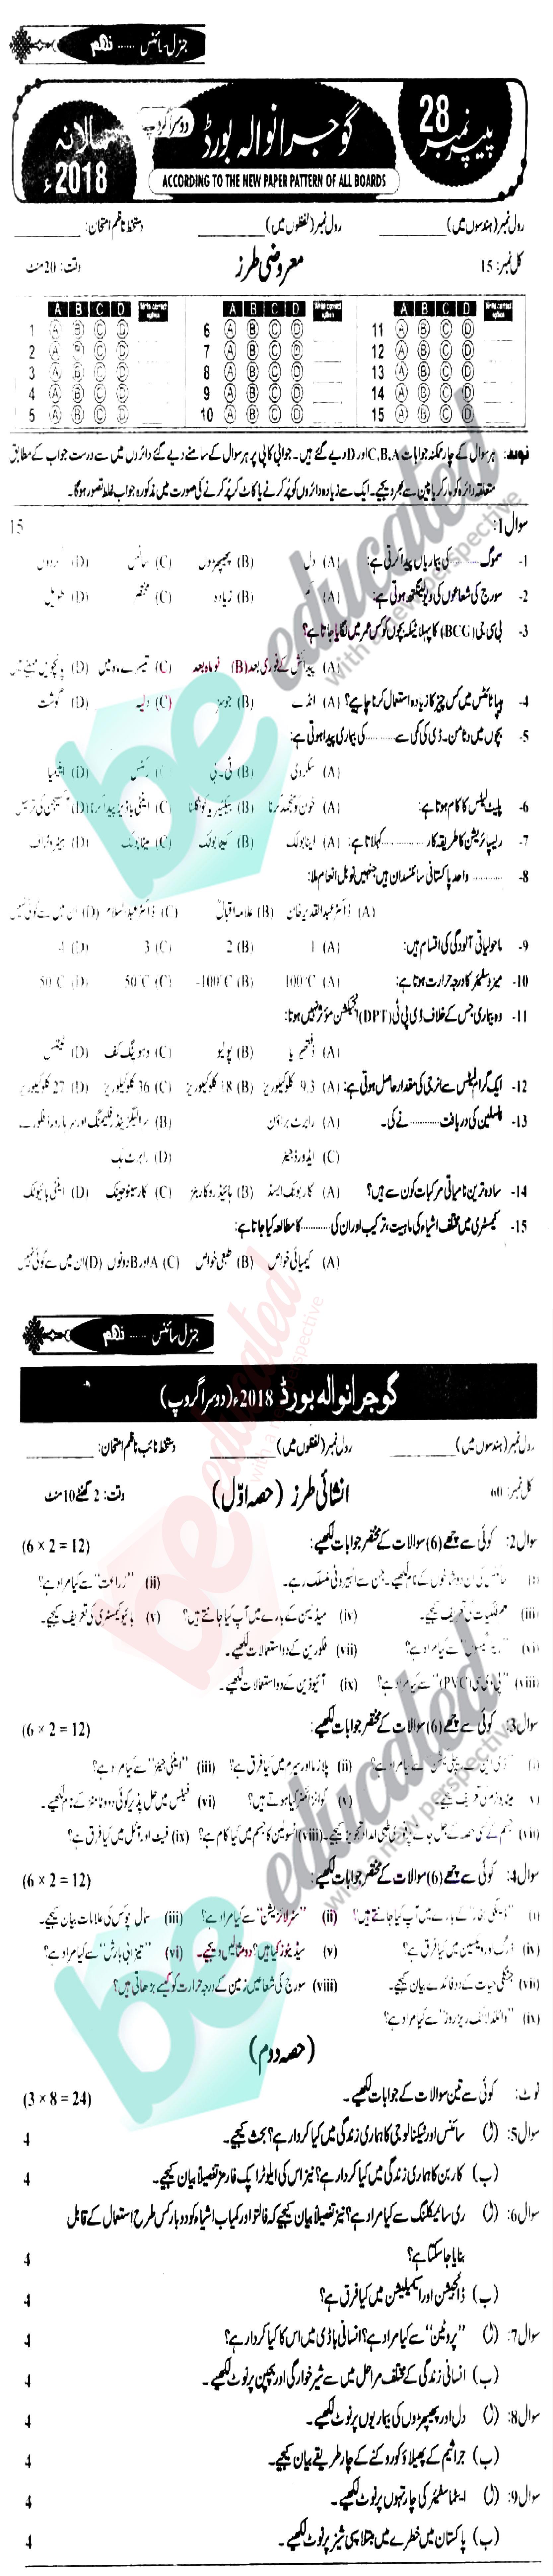 Science 9th Urdu Medium Past Paper Group 2 BISE Gujranwala 2018